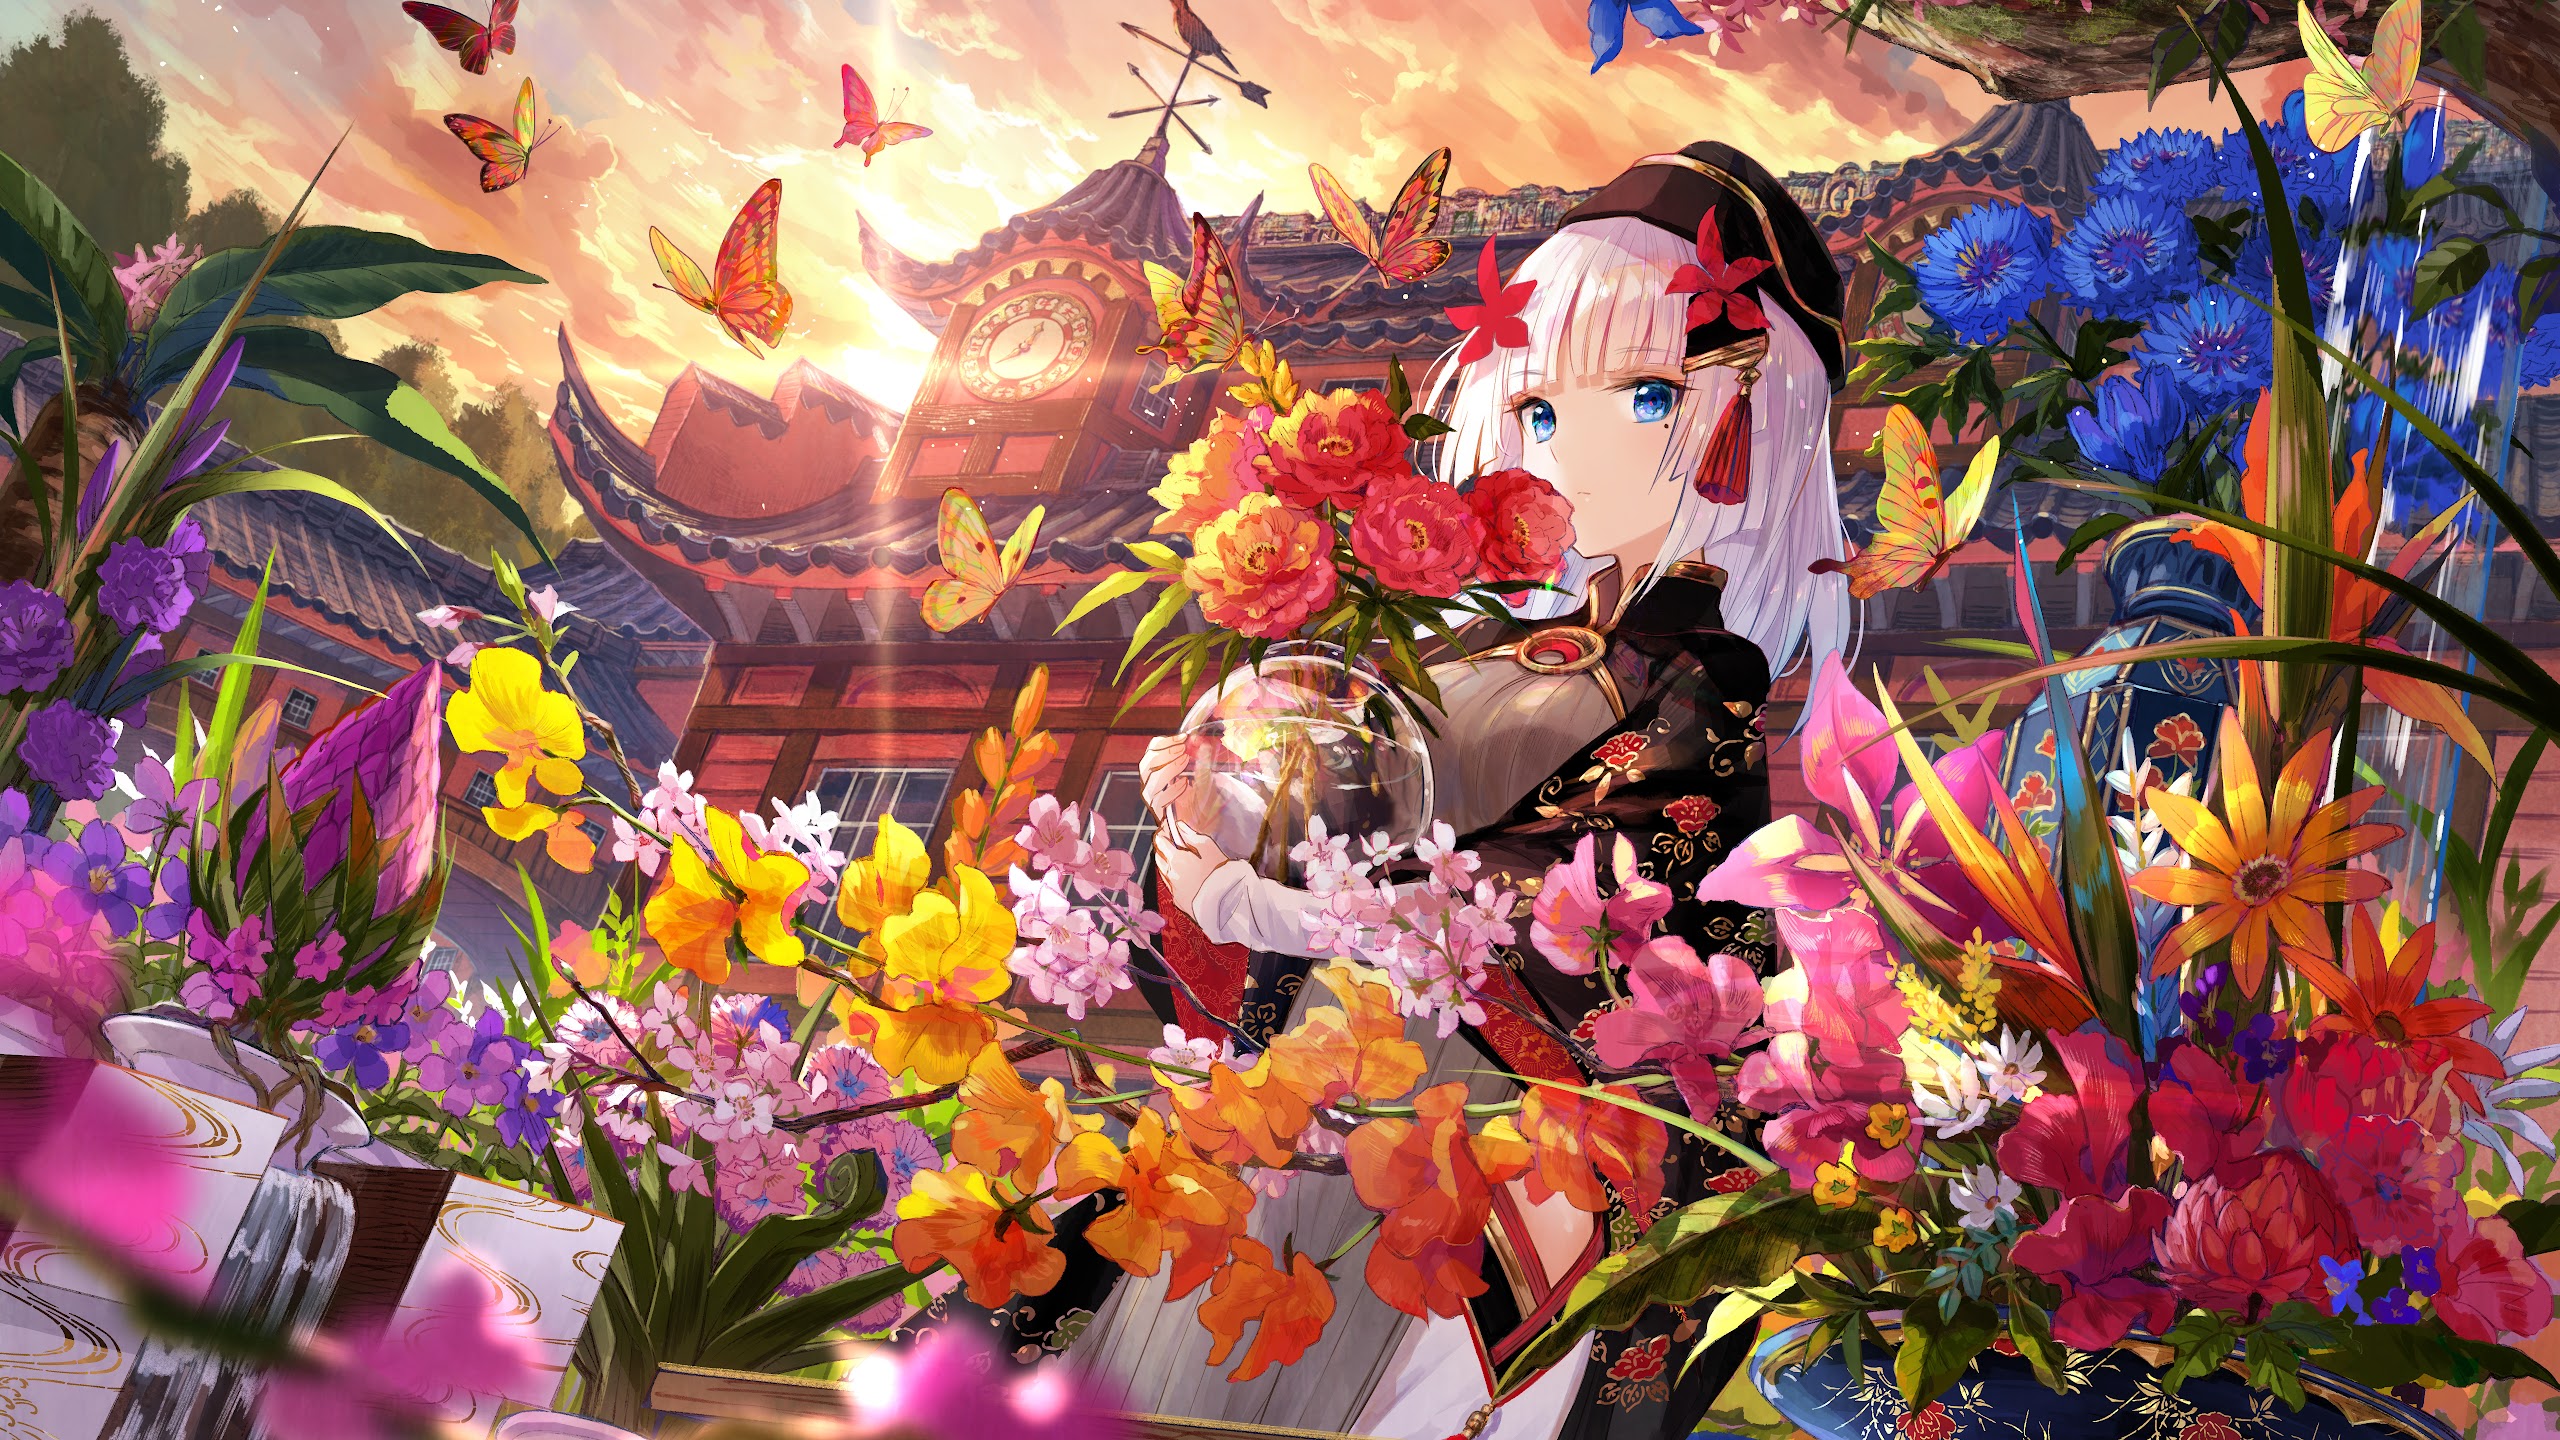 Anime Girl Butterfly Beautiful Flowers PC DeskK Wallpaper free Download